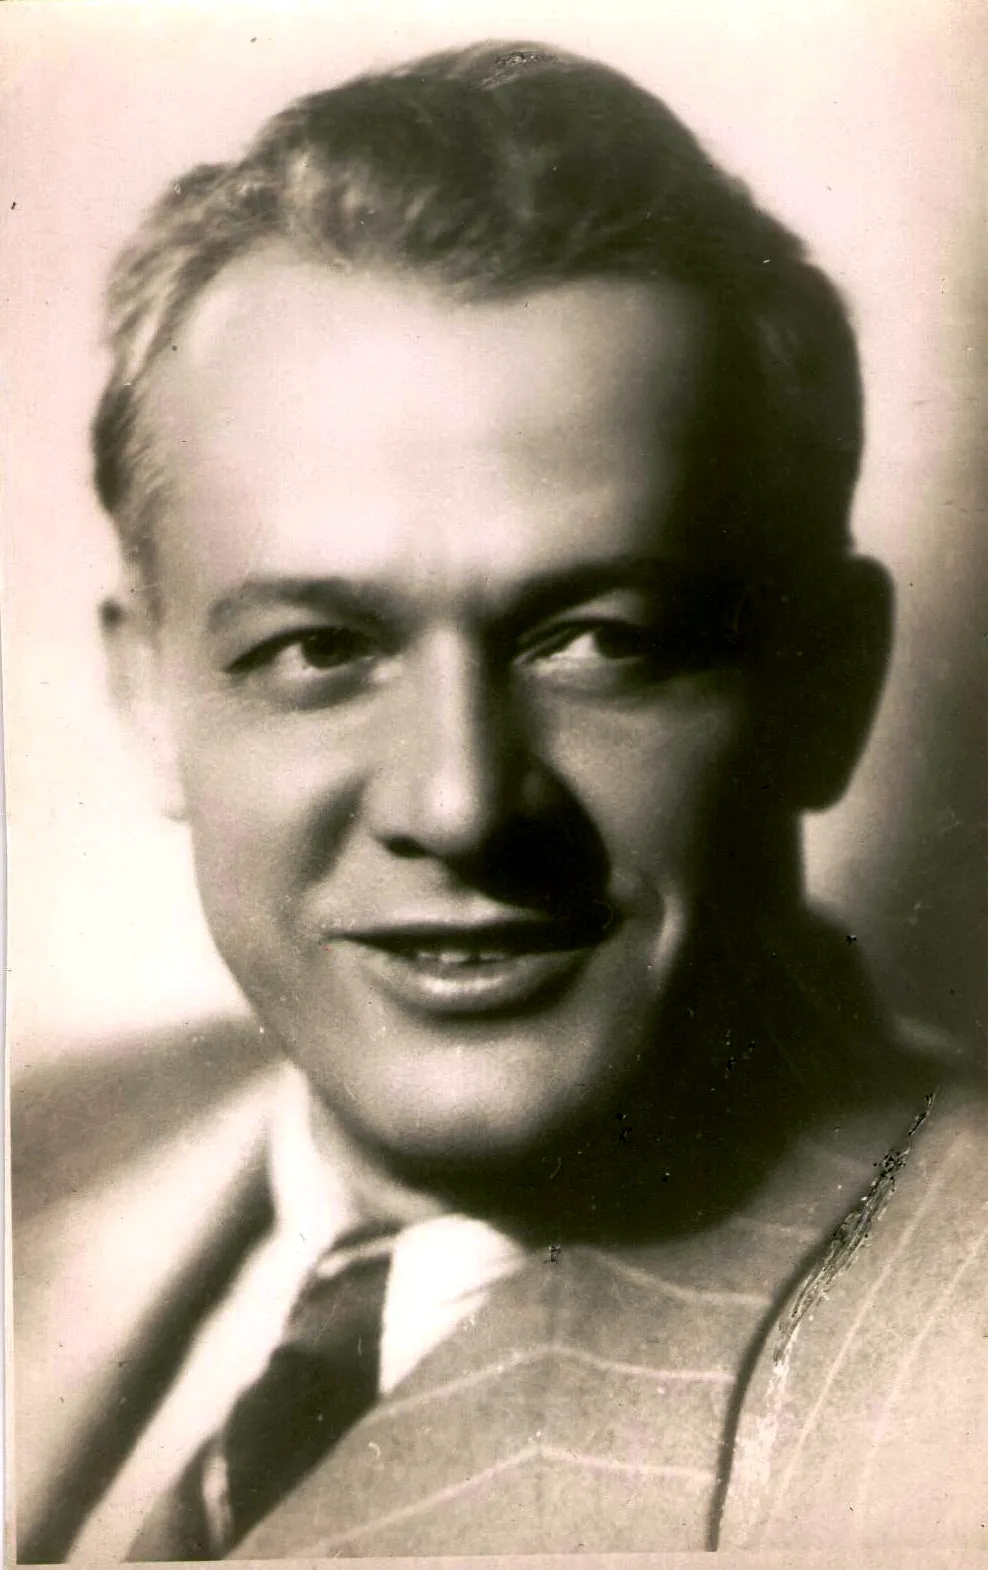 Лемешев Сергей Яковлевич